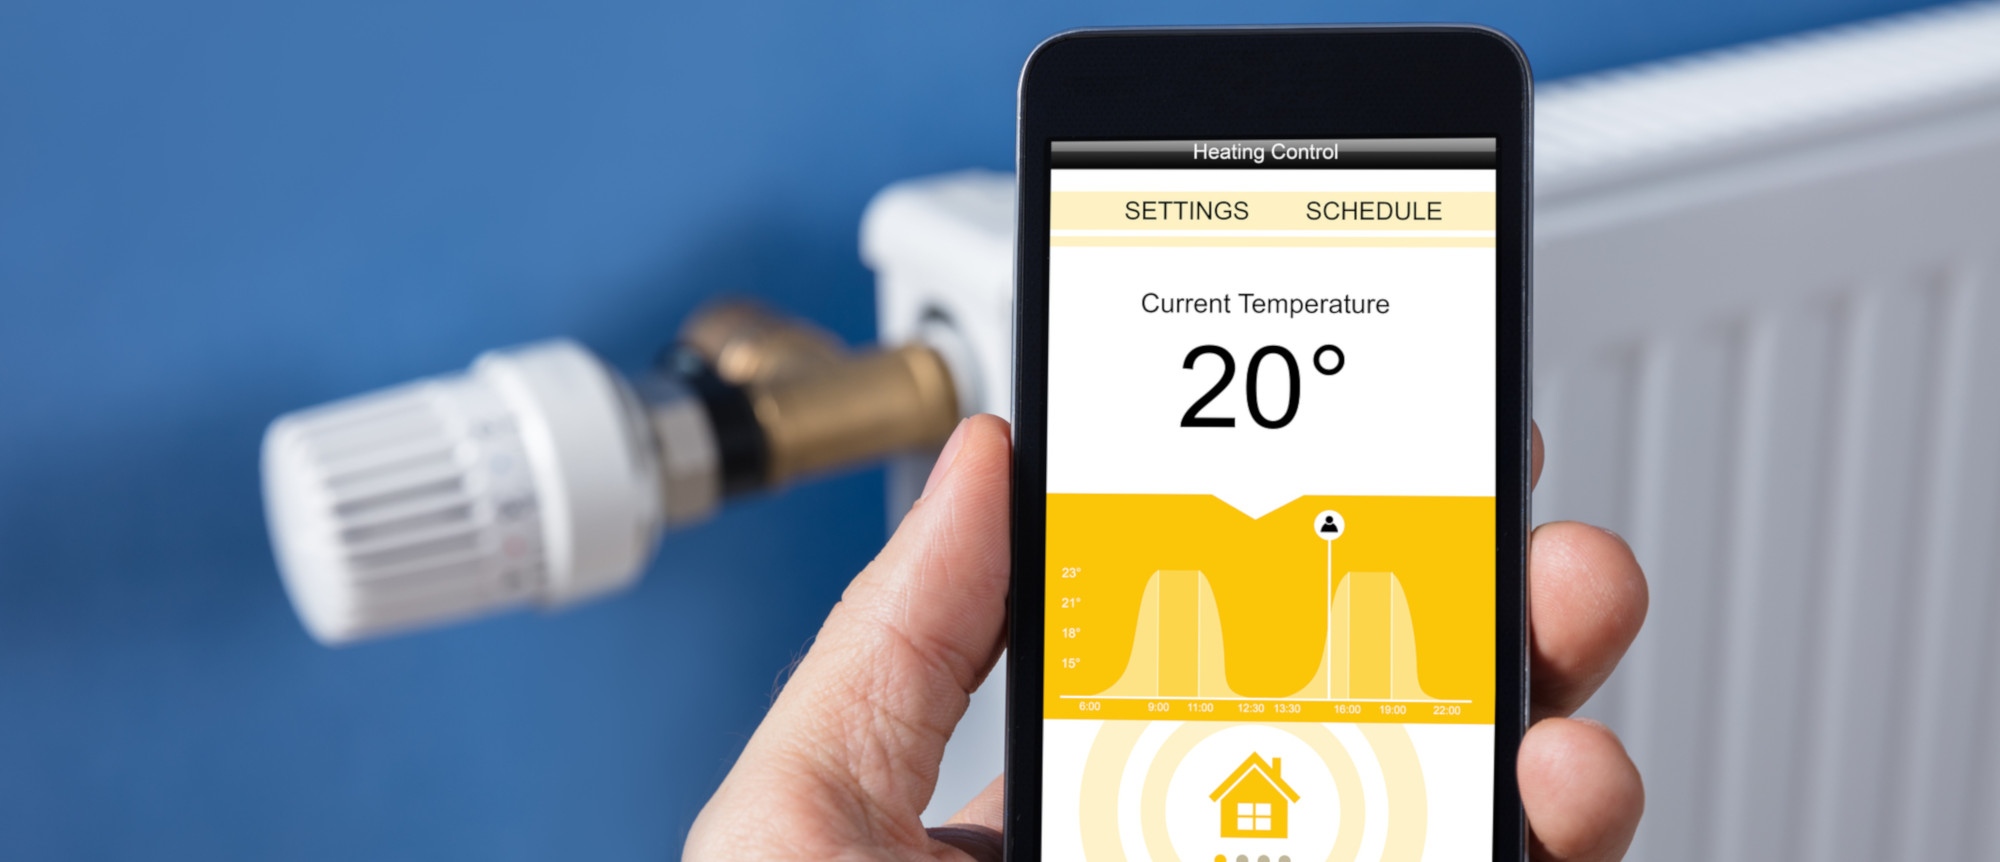 Smart Home: Mit dem Smartphone kann das Heizungsthermostat von überall aus gesteuert werden.